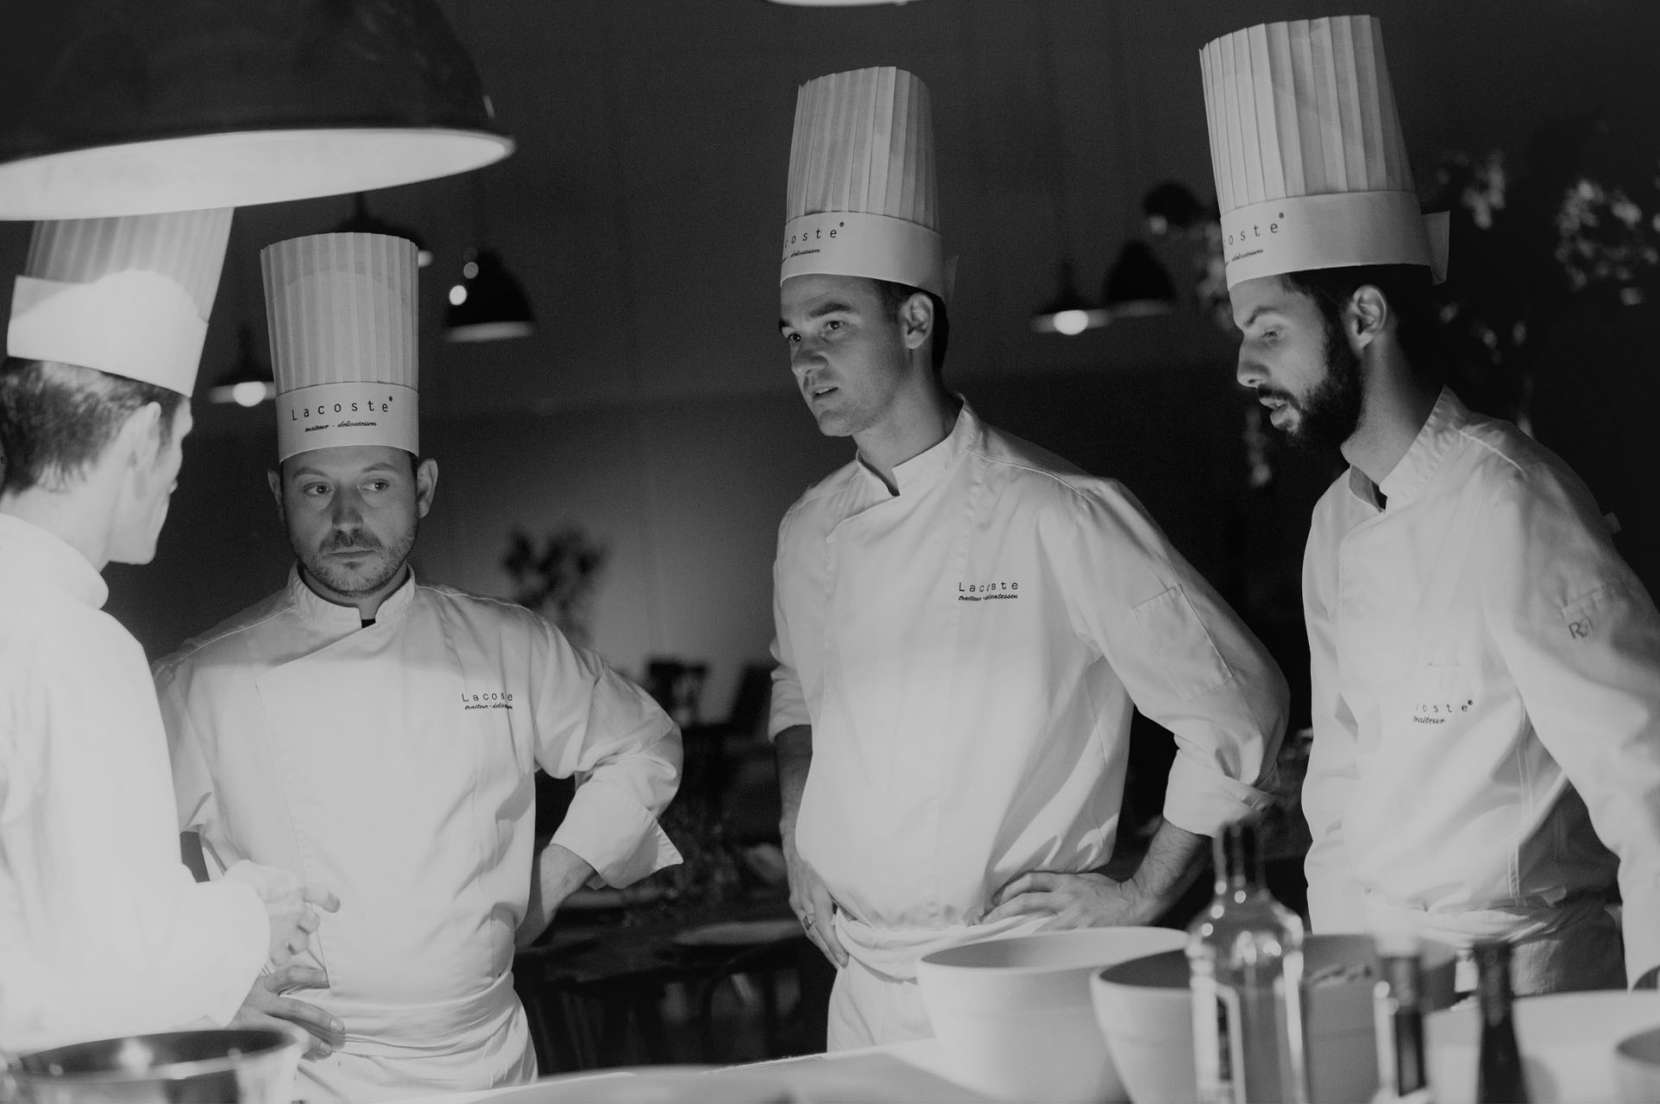 equipe-de-cuisine-de-chez-Lacoste-traiteur-avant-le-service-au-palais-des-congrès-de-bordeaux-1660x1104.jpg